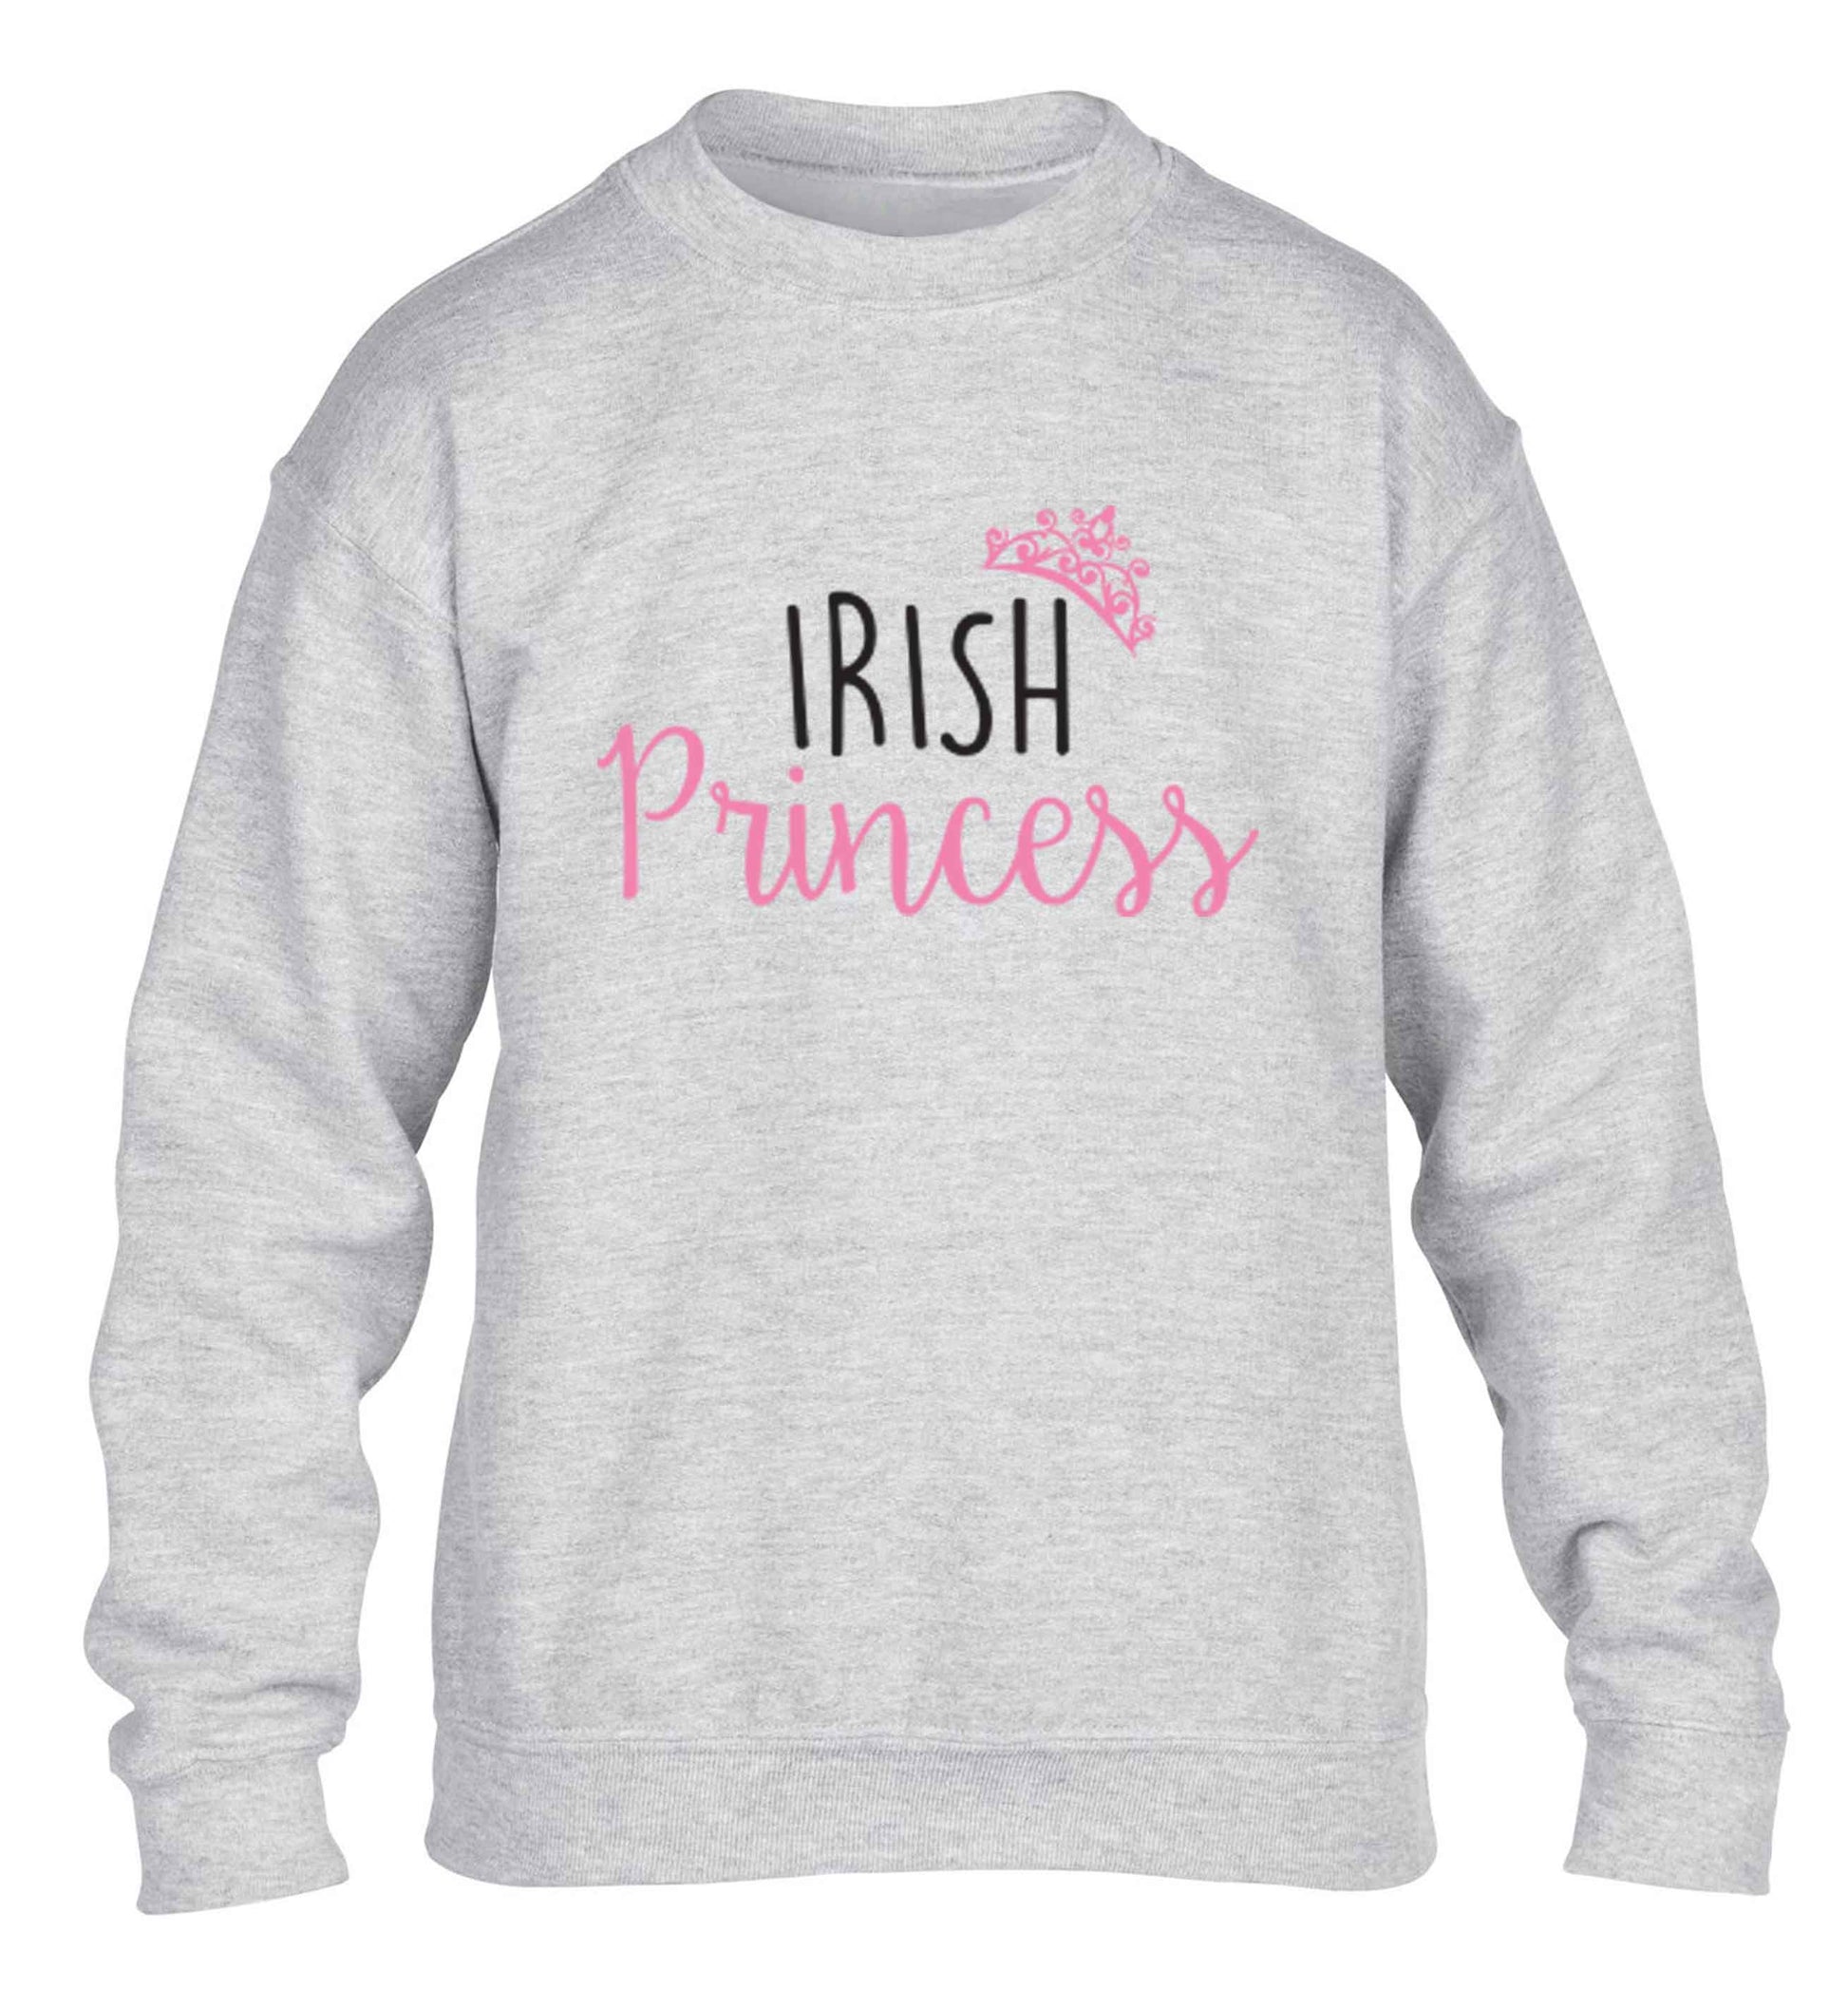 Irish princess children's grey sweater 12-13 Years